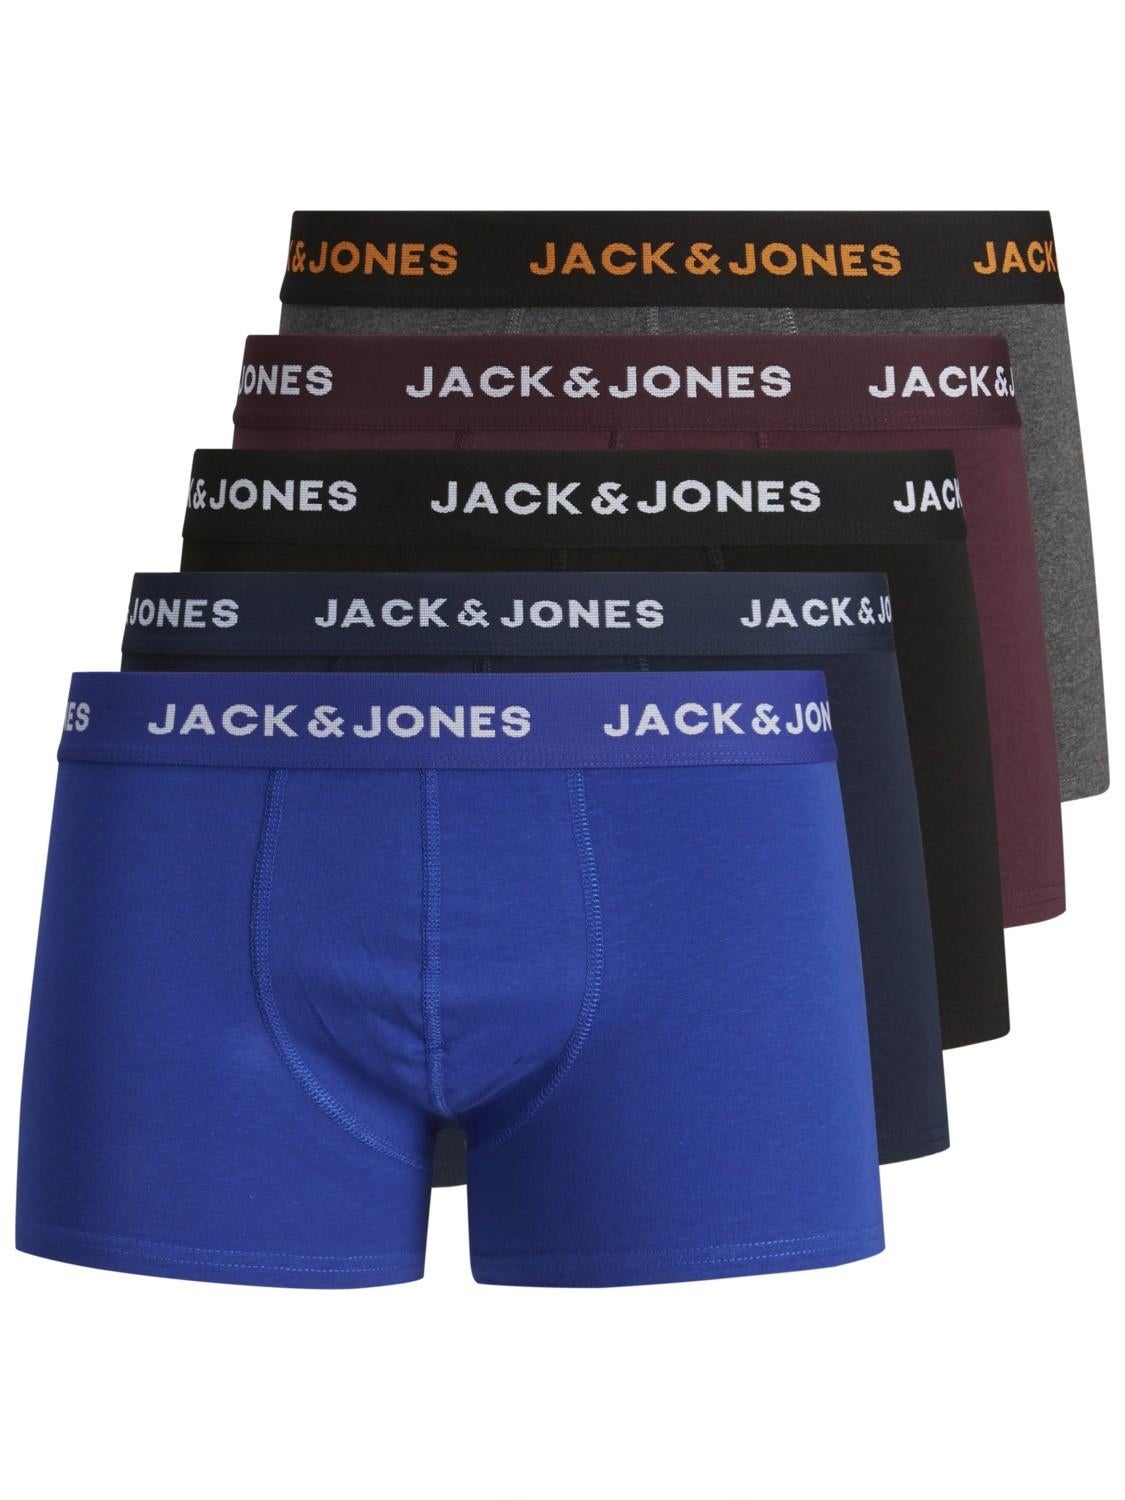 MEN FASHION Accessories Blue Single discount 81% Jack & Jones hat and cap 